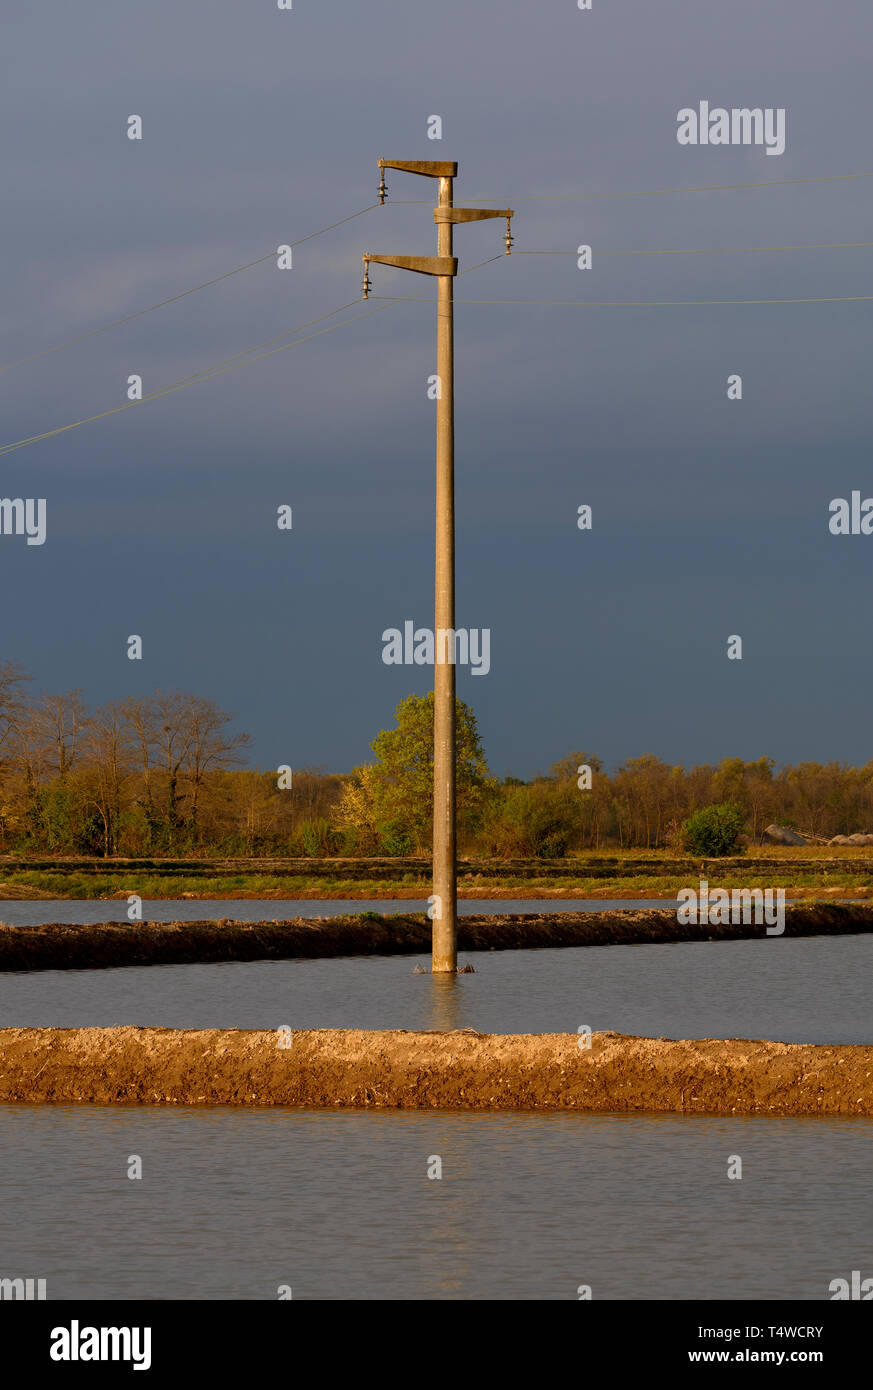 Poste eléctrico sumergido en el agua de un arrozal Foto de stock